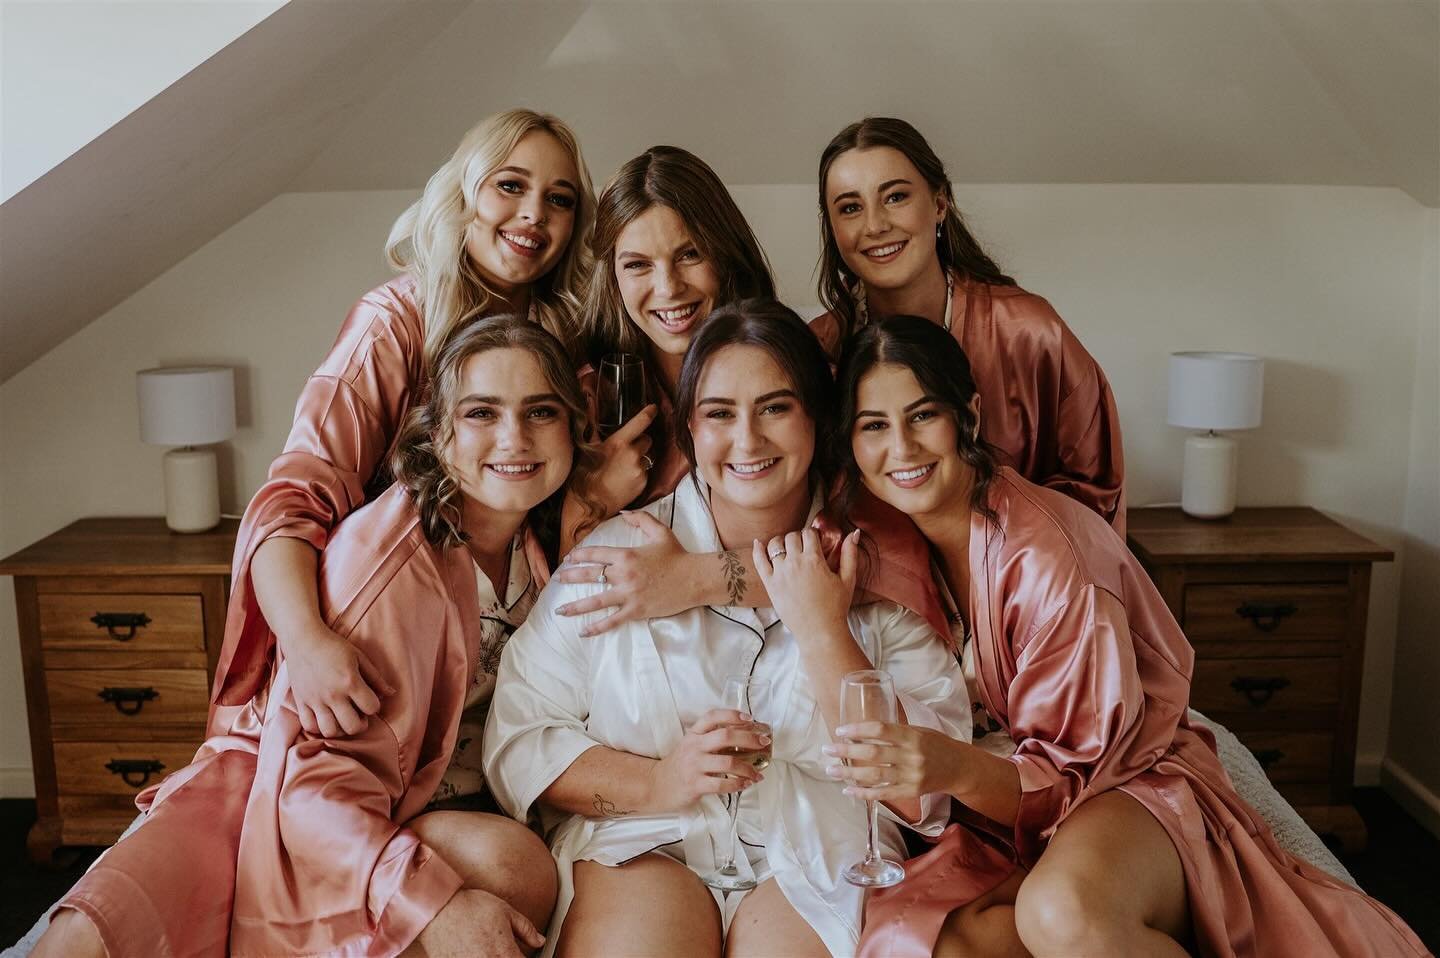 Girl squad. 
.
.
.
.
.
.

.
.
.
#launcestonweddingphotographer #launcestonphotographer #tasmanianweddingphotographer #tassiewedding #devonportweddingphotographer #burnieweddingphotographer